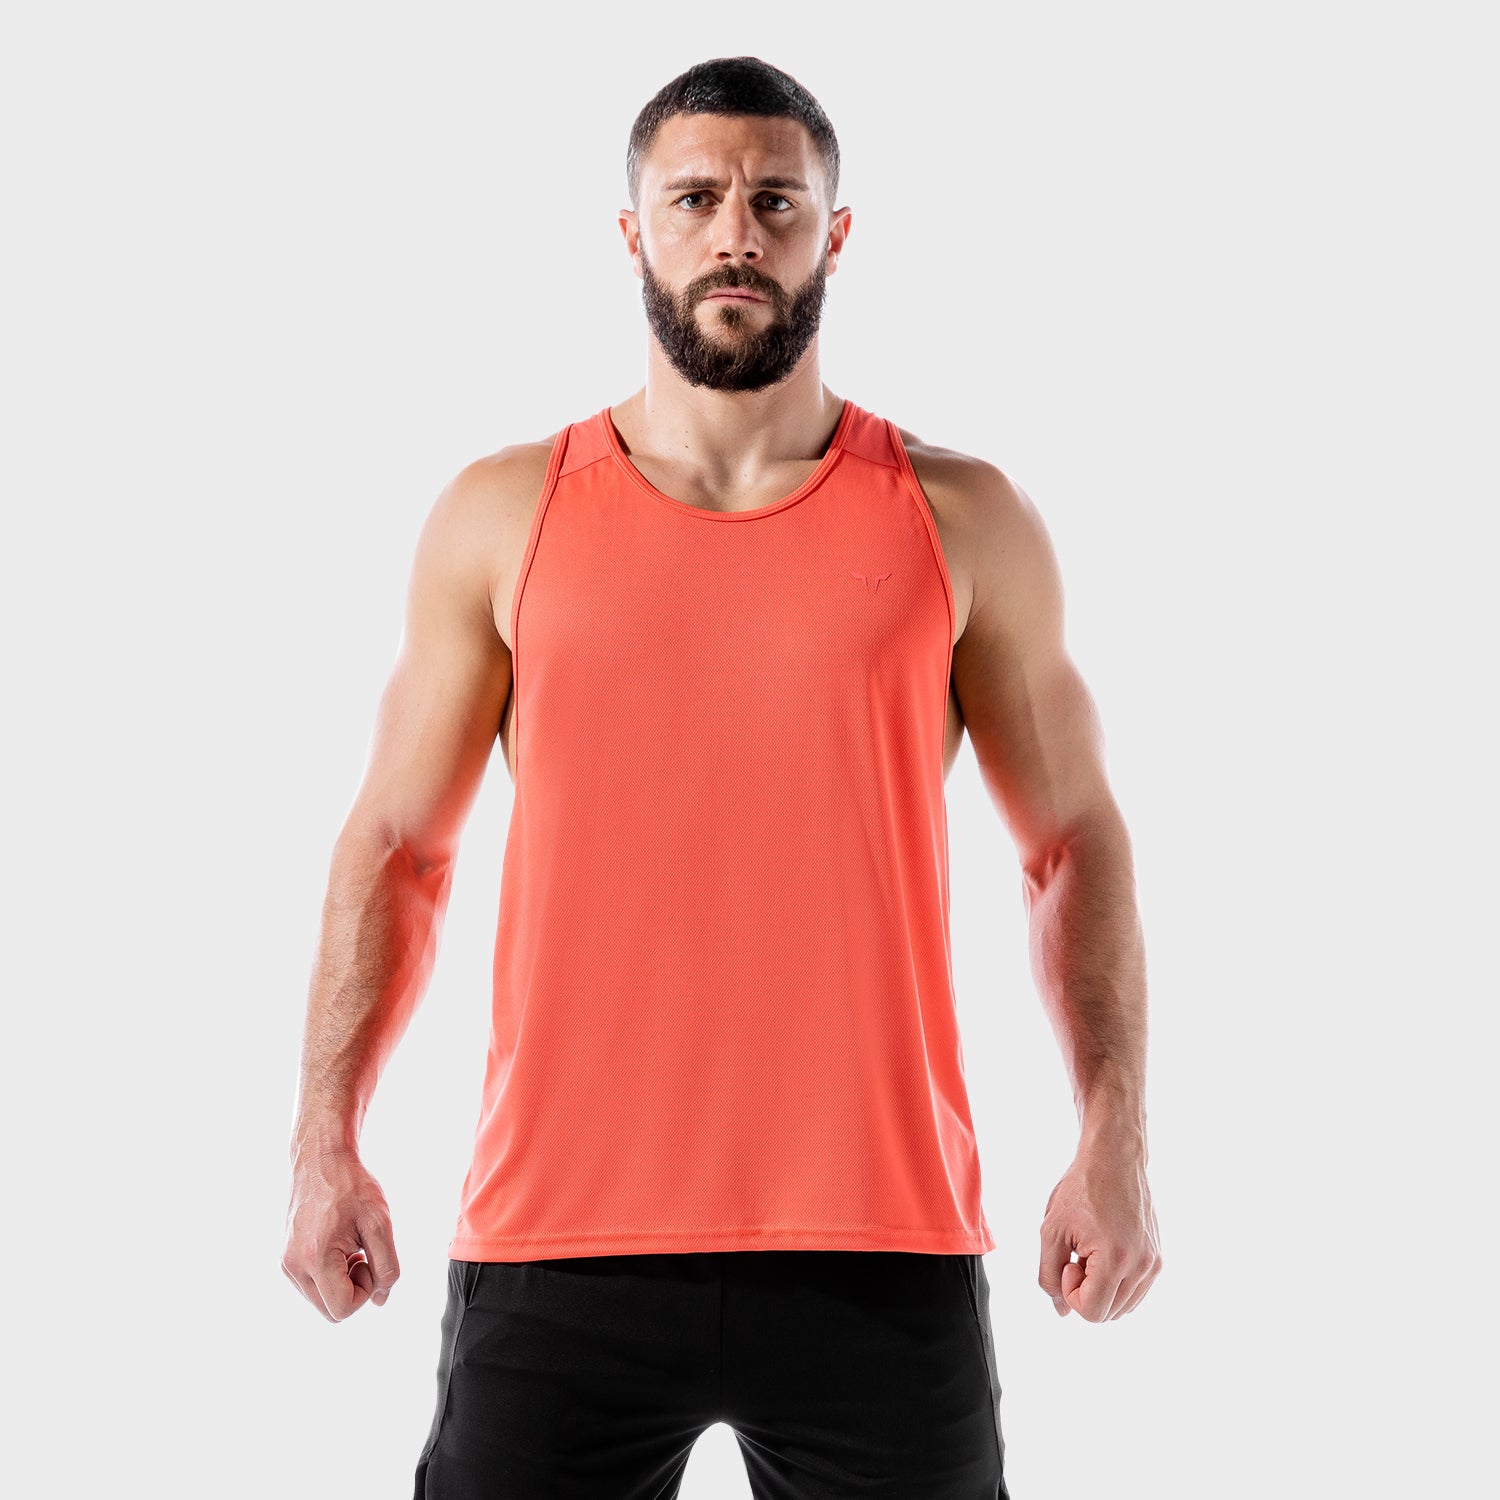 squatwolf-gym-wear-lab-360-weightless-stringer-red-stringer-vests-for-men